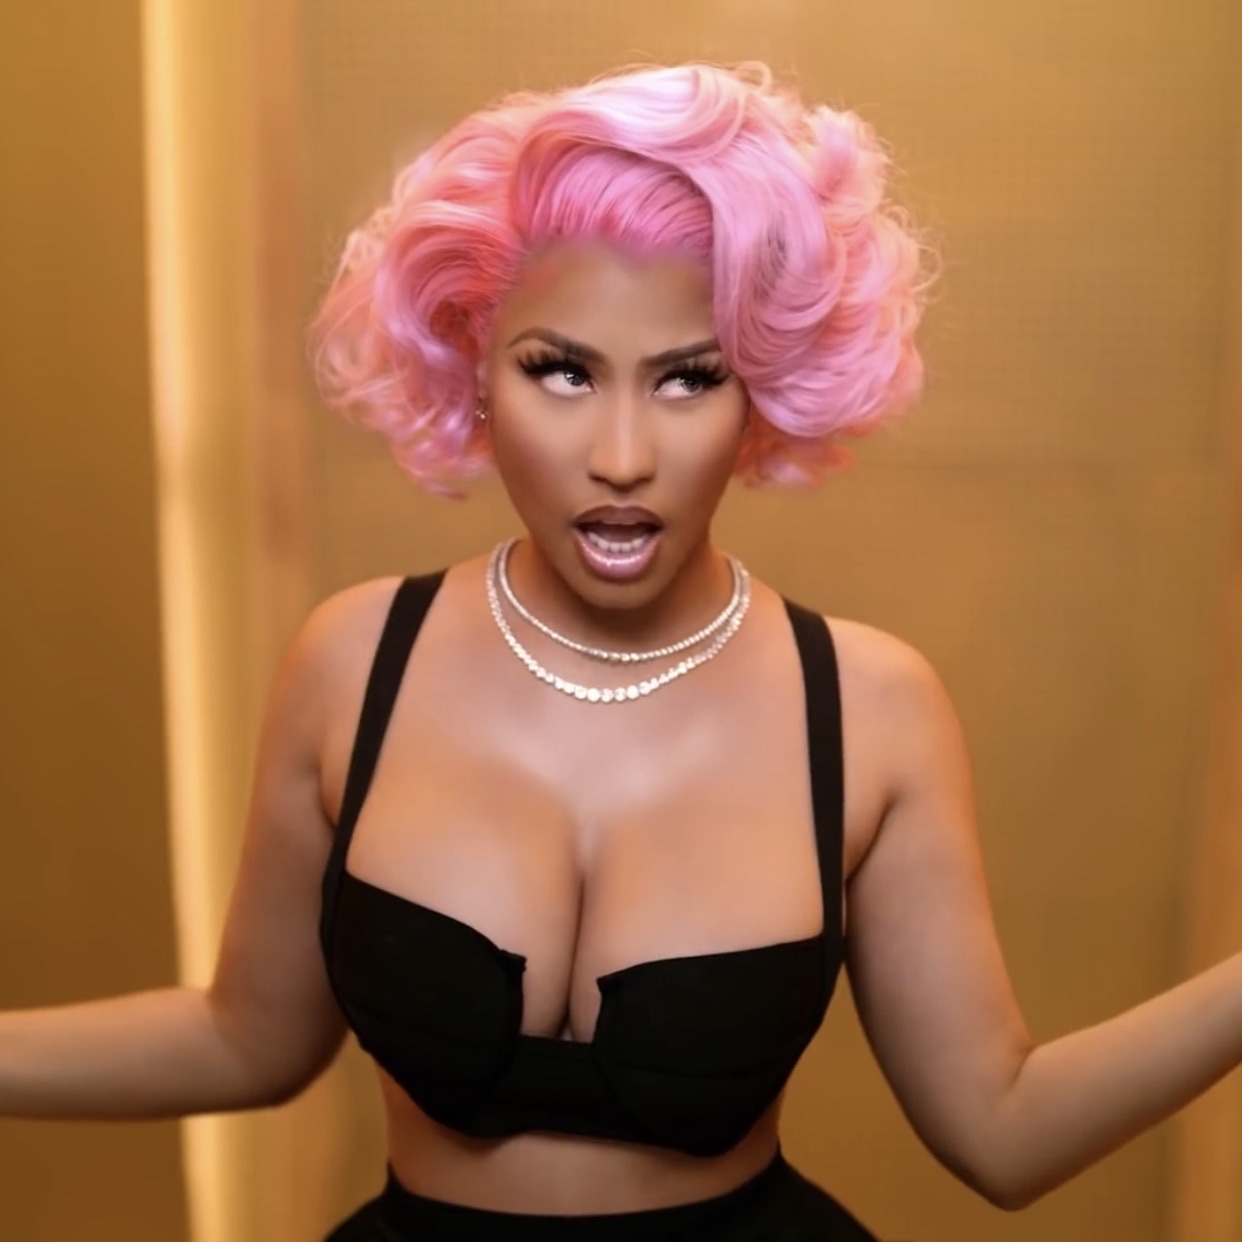 Should Nicki Minaj be held as a fashion icon?